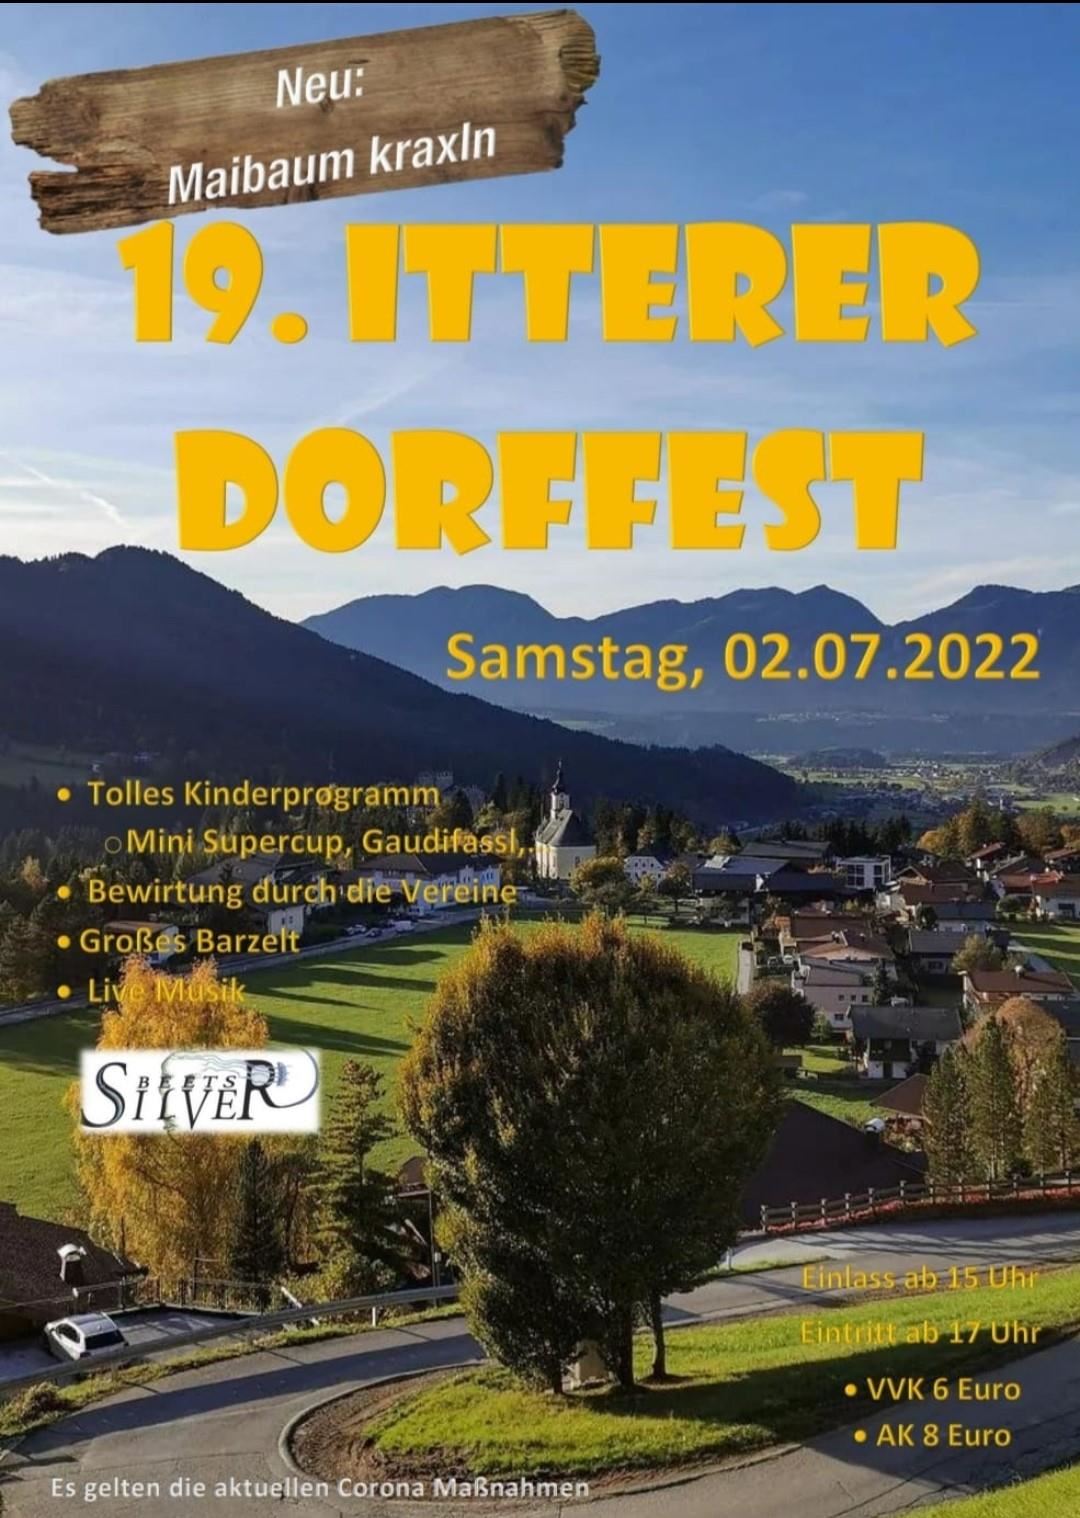 Dorffest Itter (Foto: Dorffestverein)